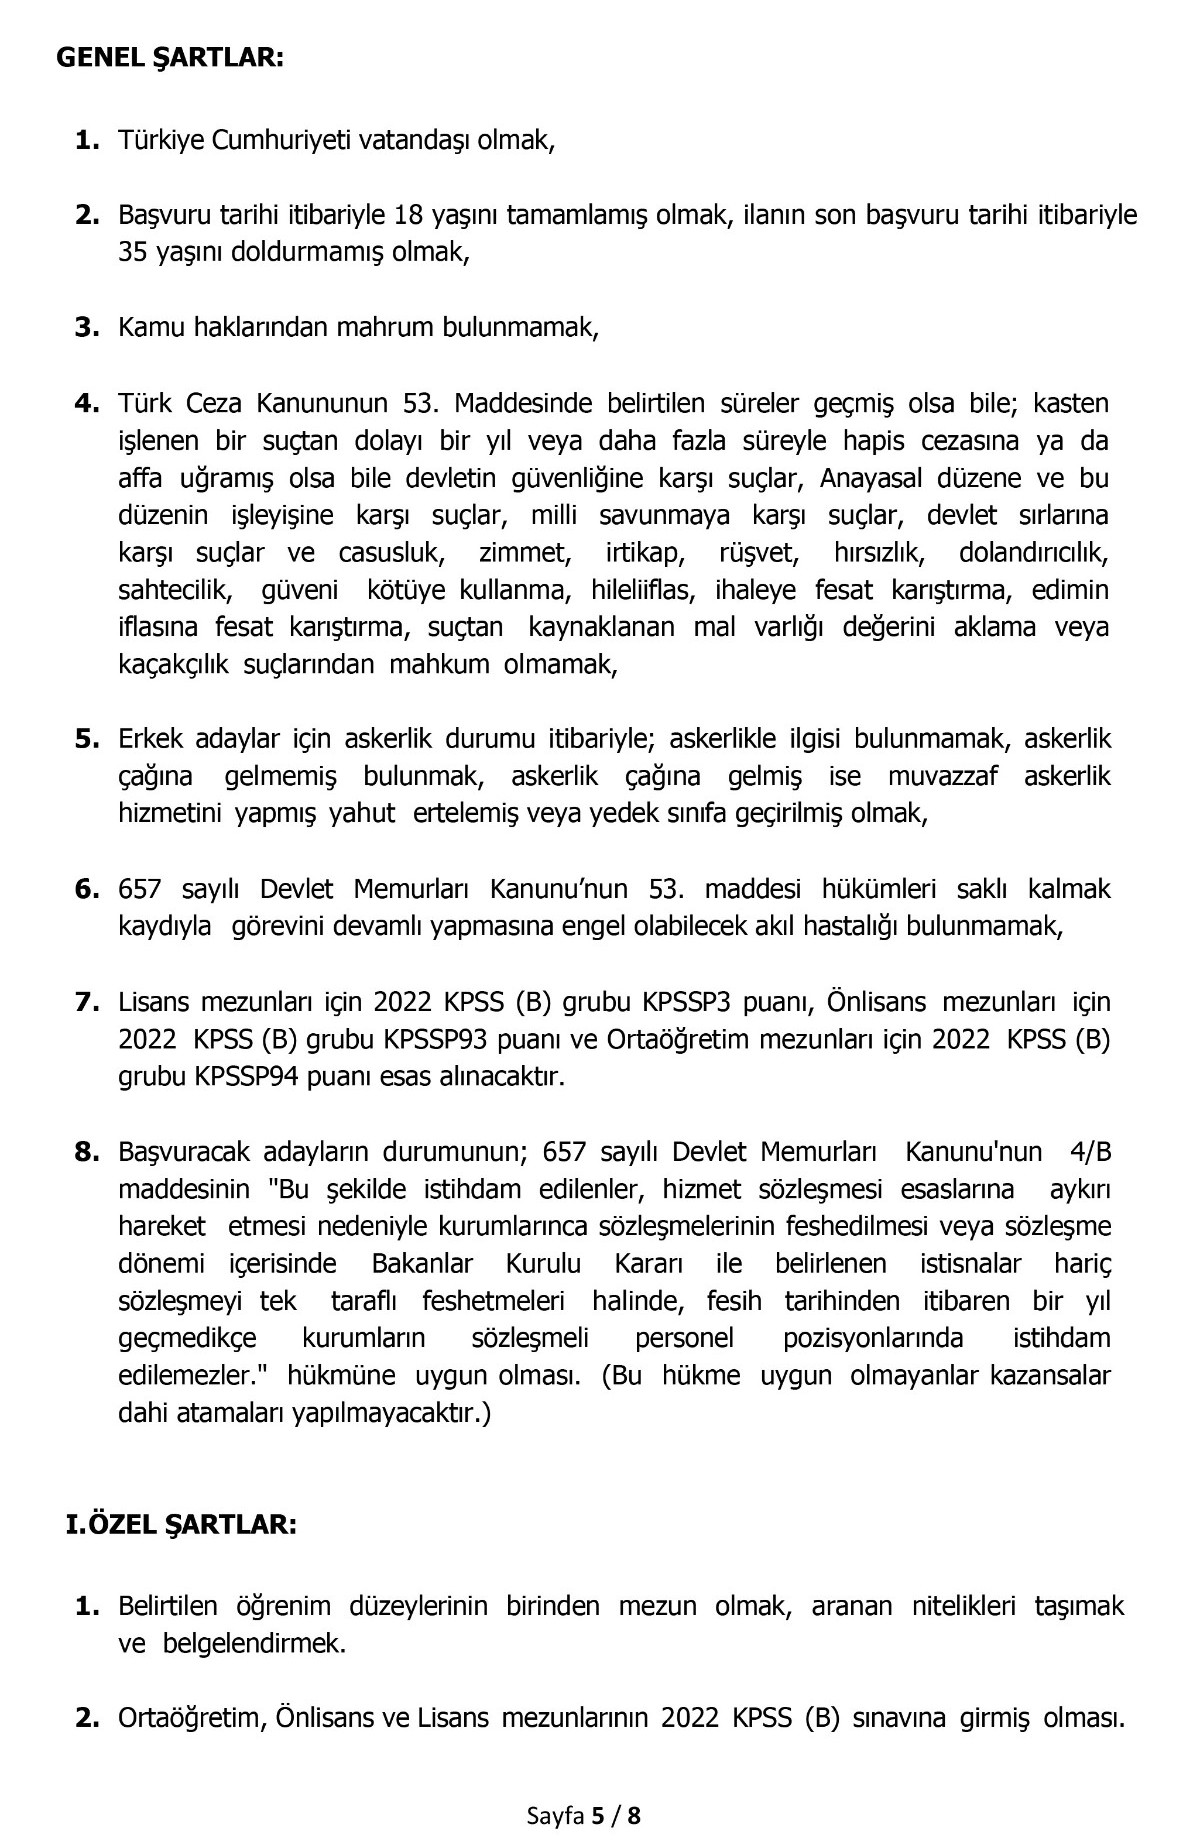 Konya Selçuk Üniversitesi 93 sözleşmeli personel alımı